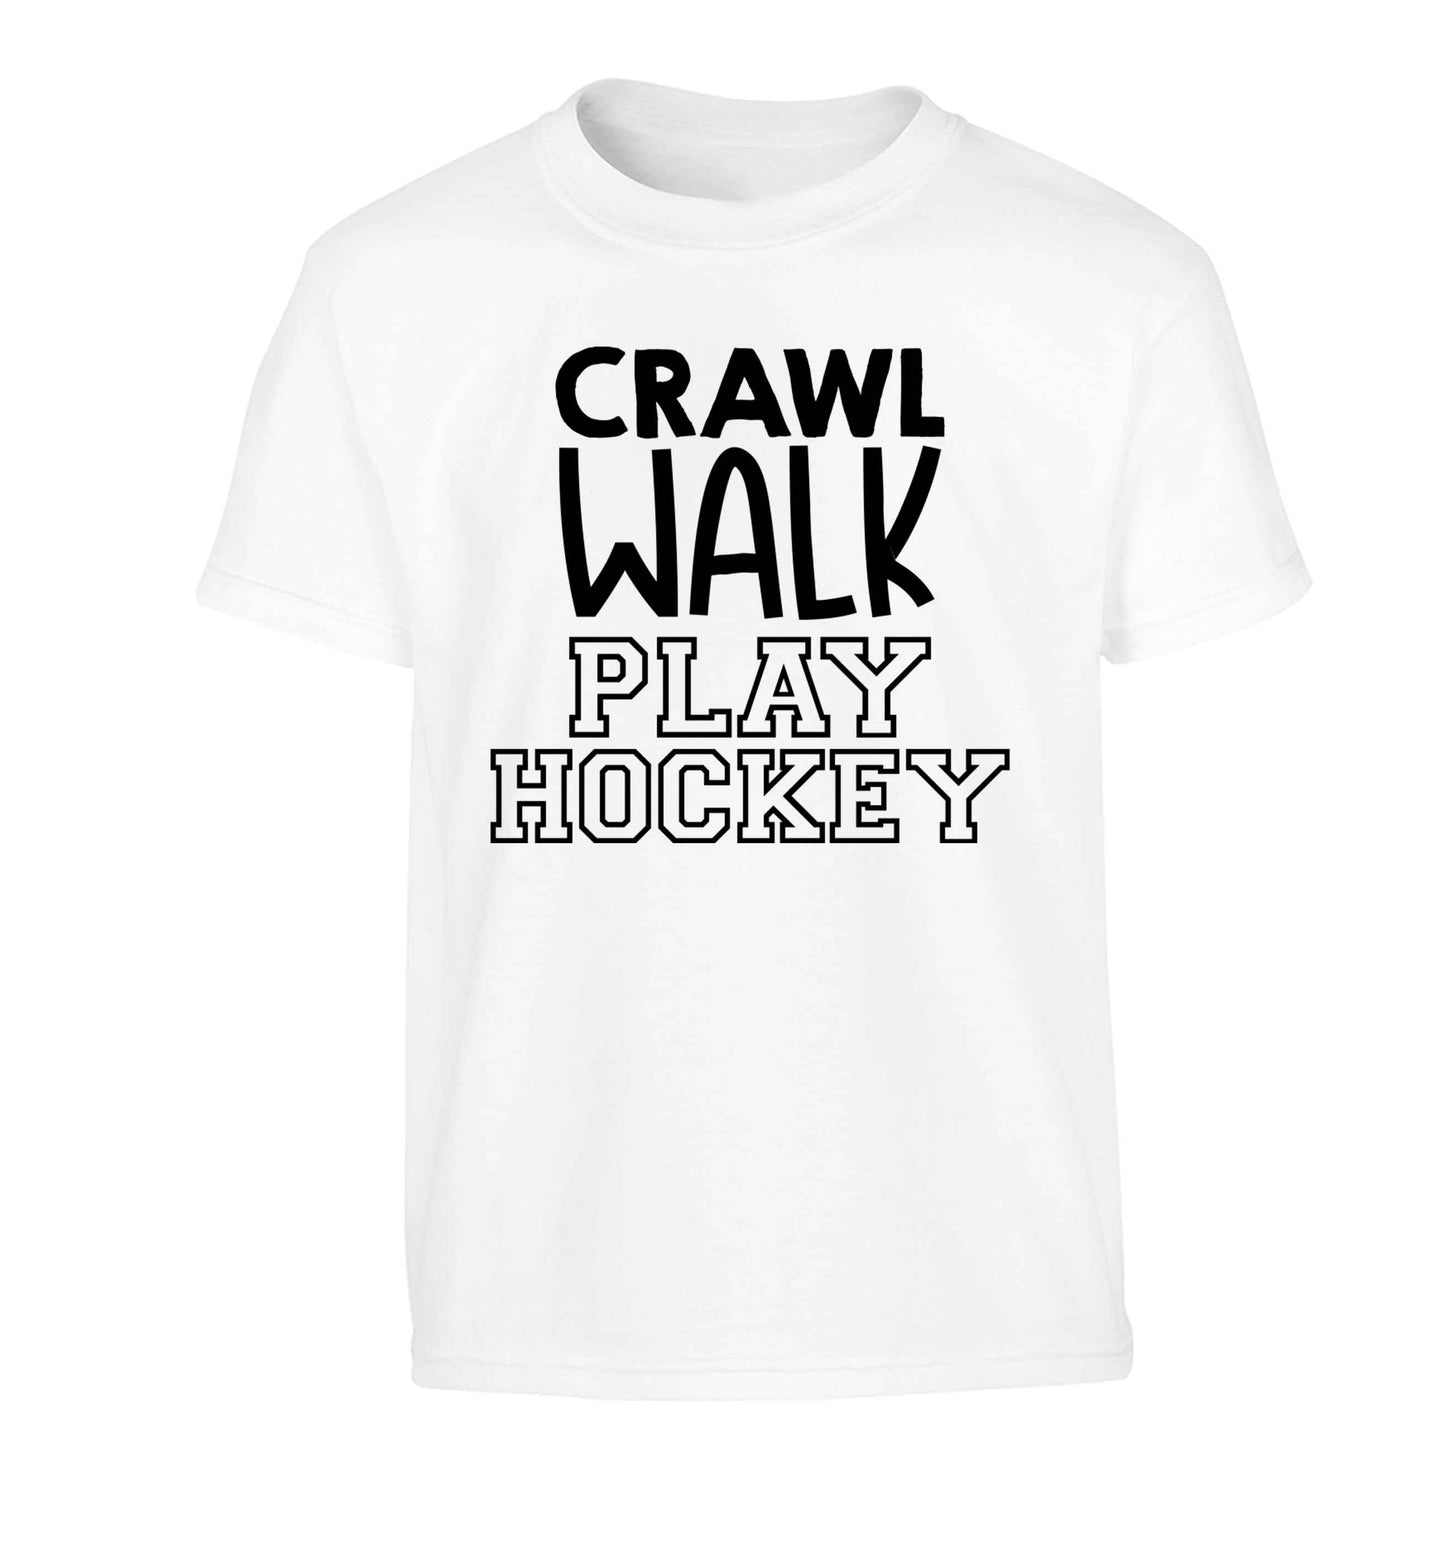 Crawl walk play hockey Children's white Tshirt 12-13 Years